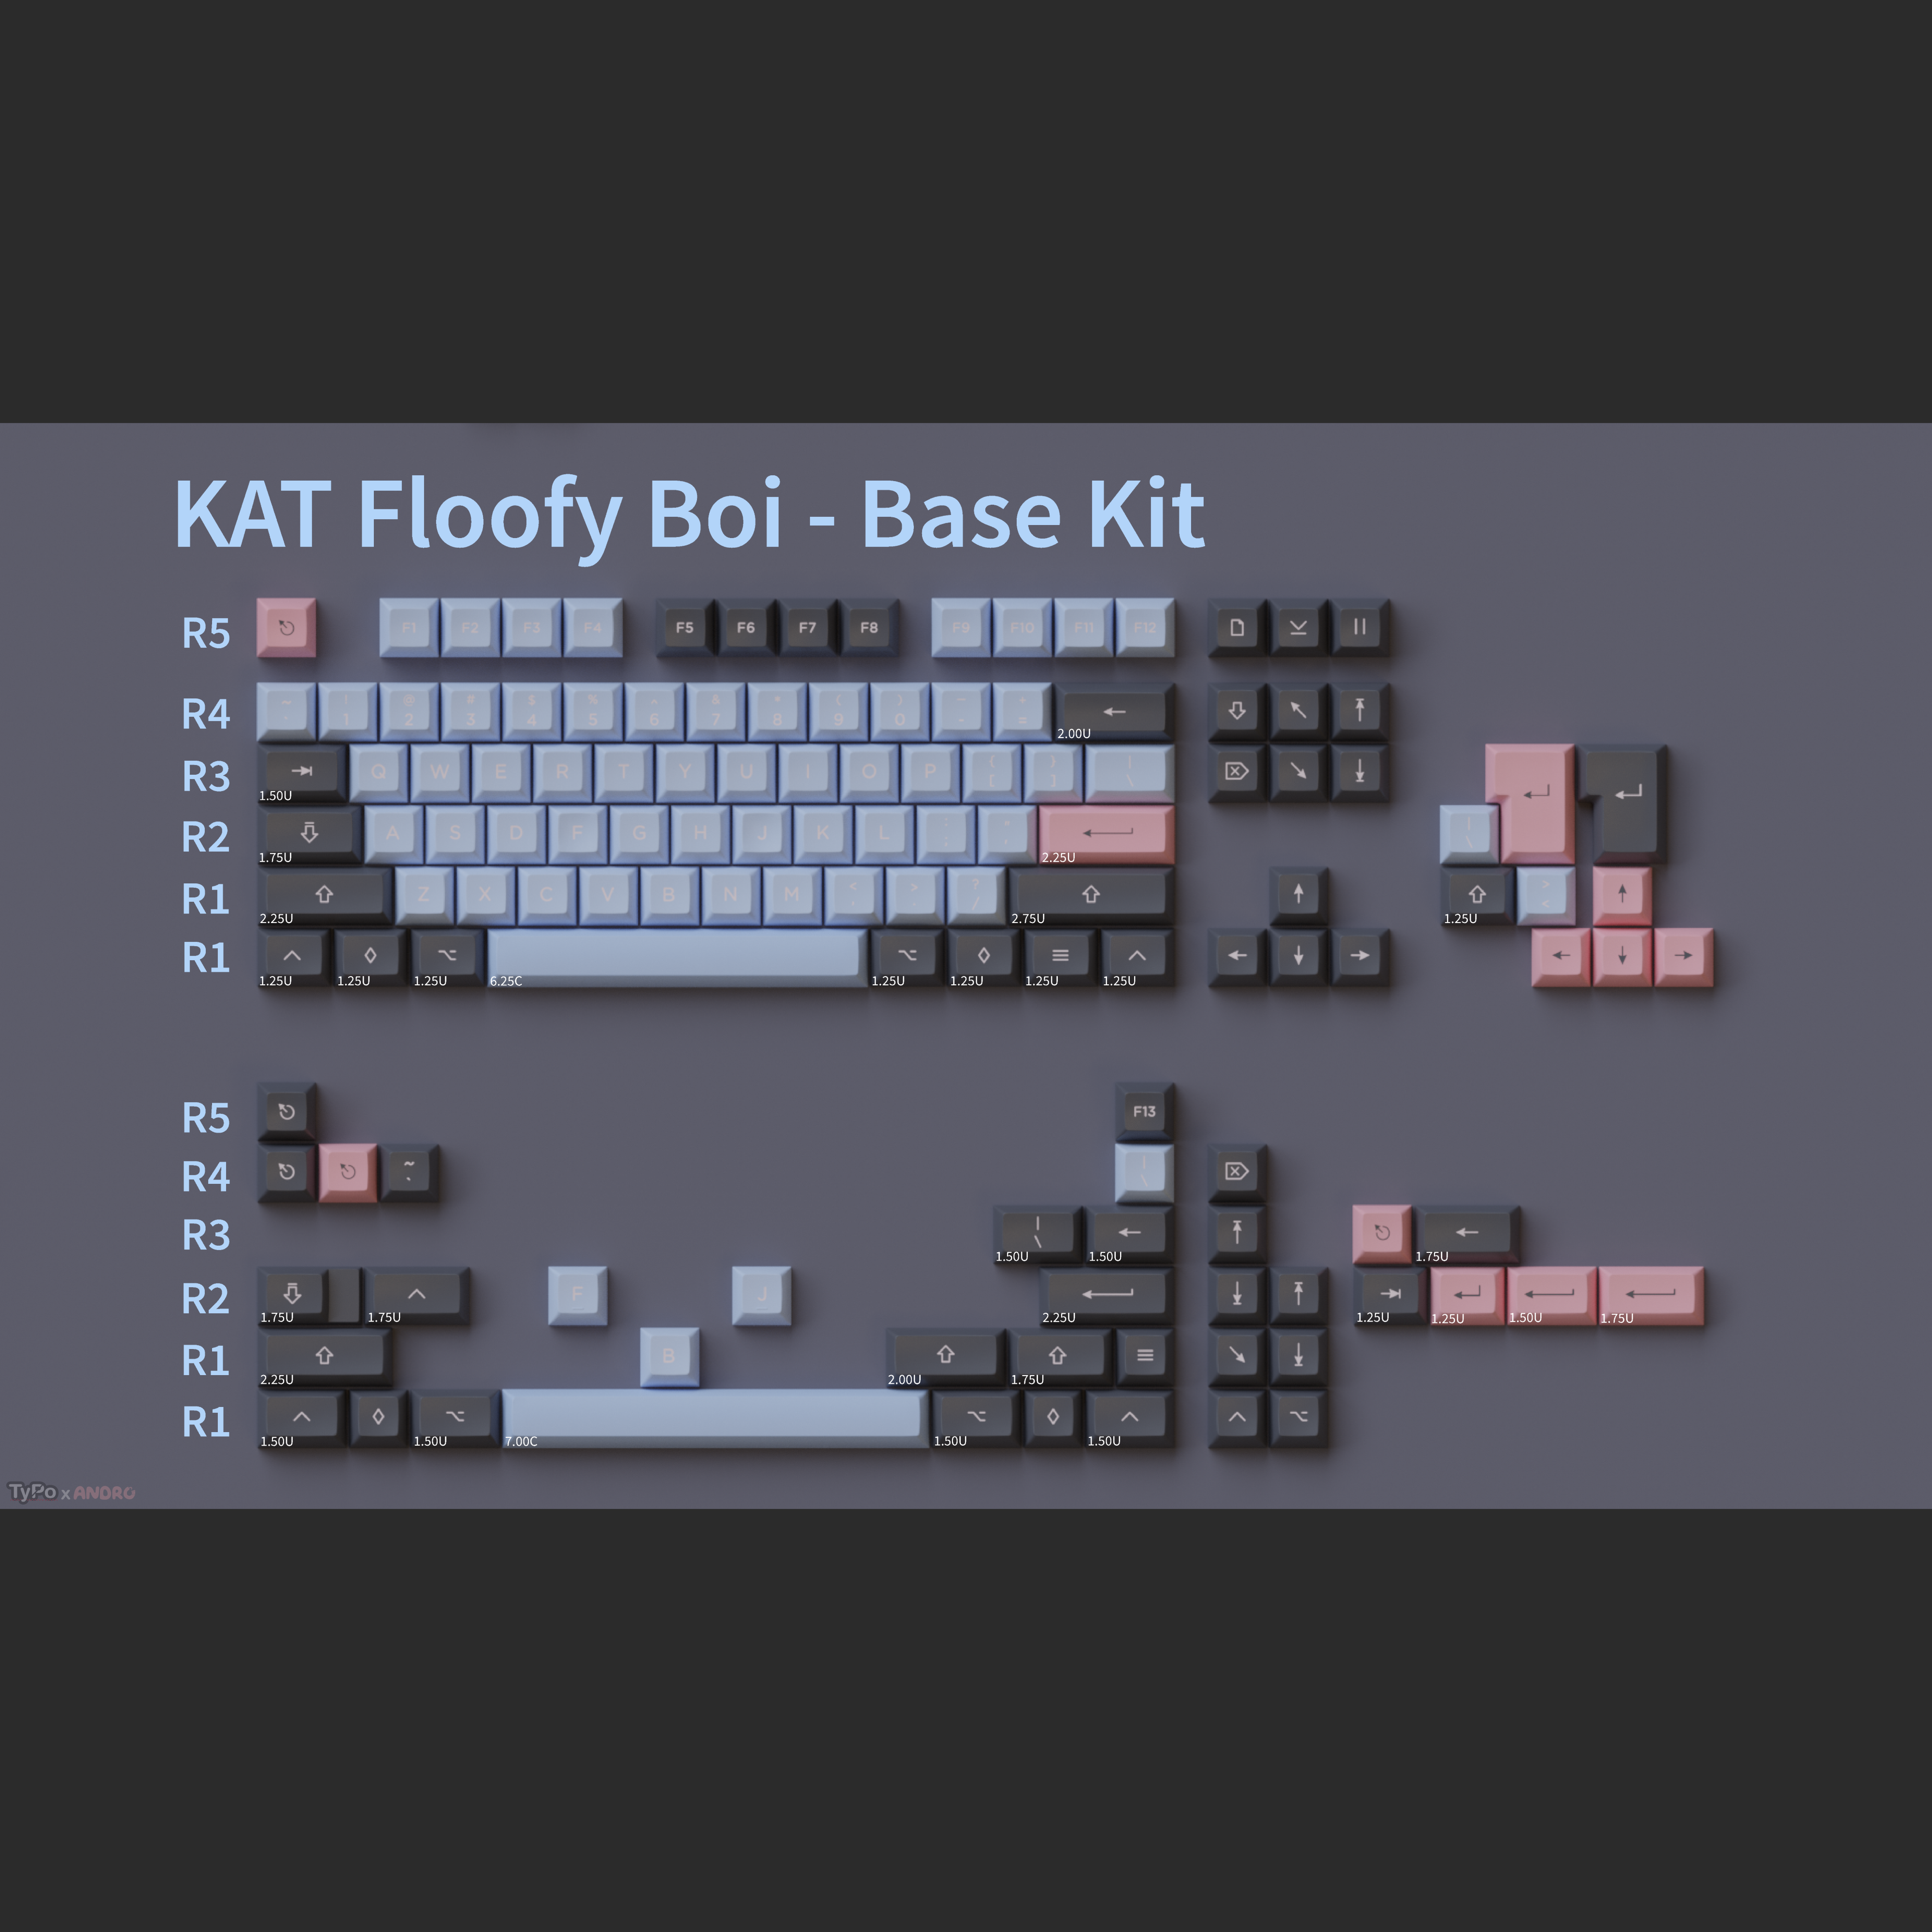 KAT Floofy Boi Keycaps